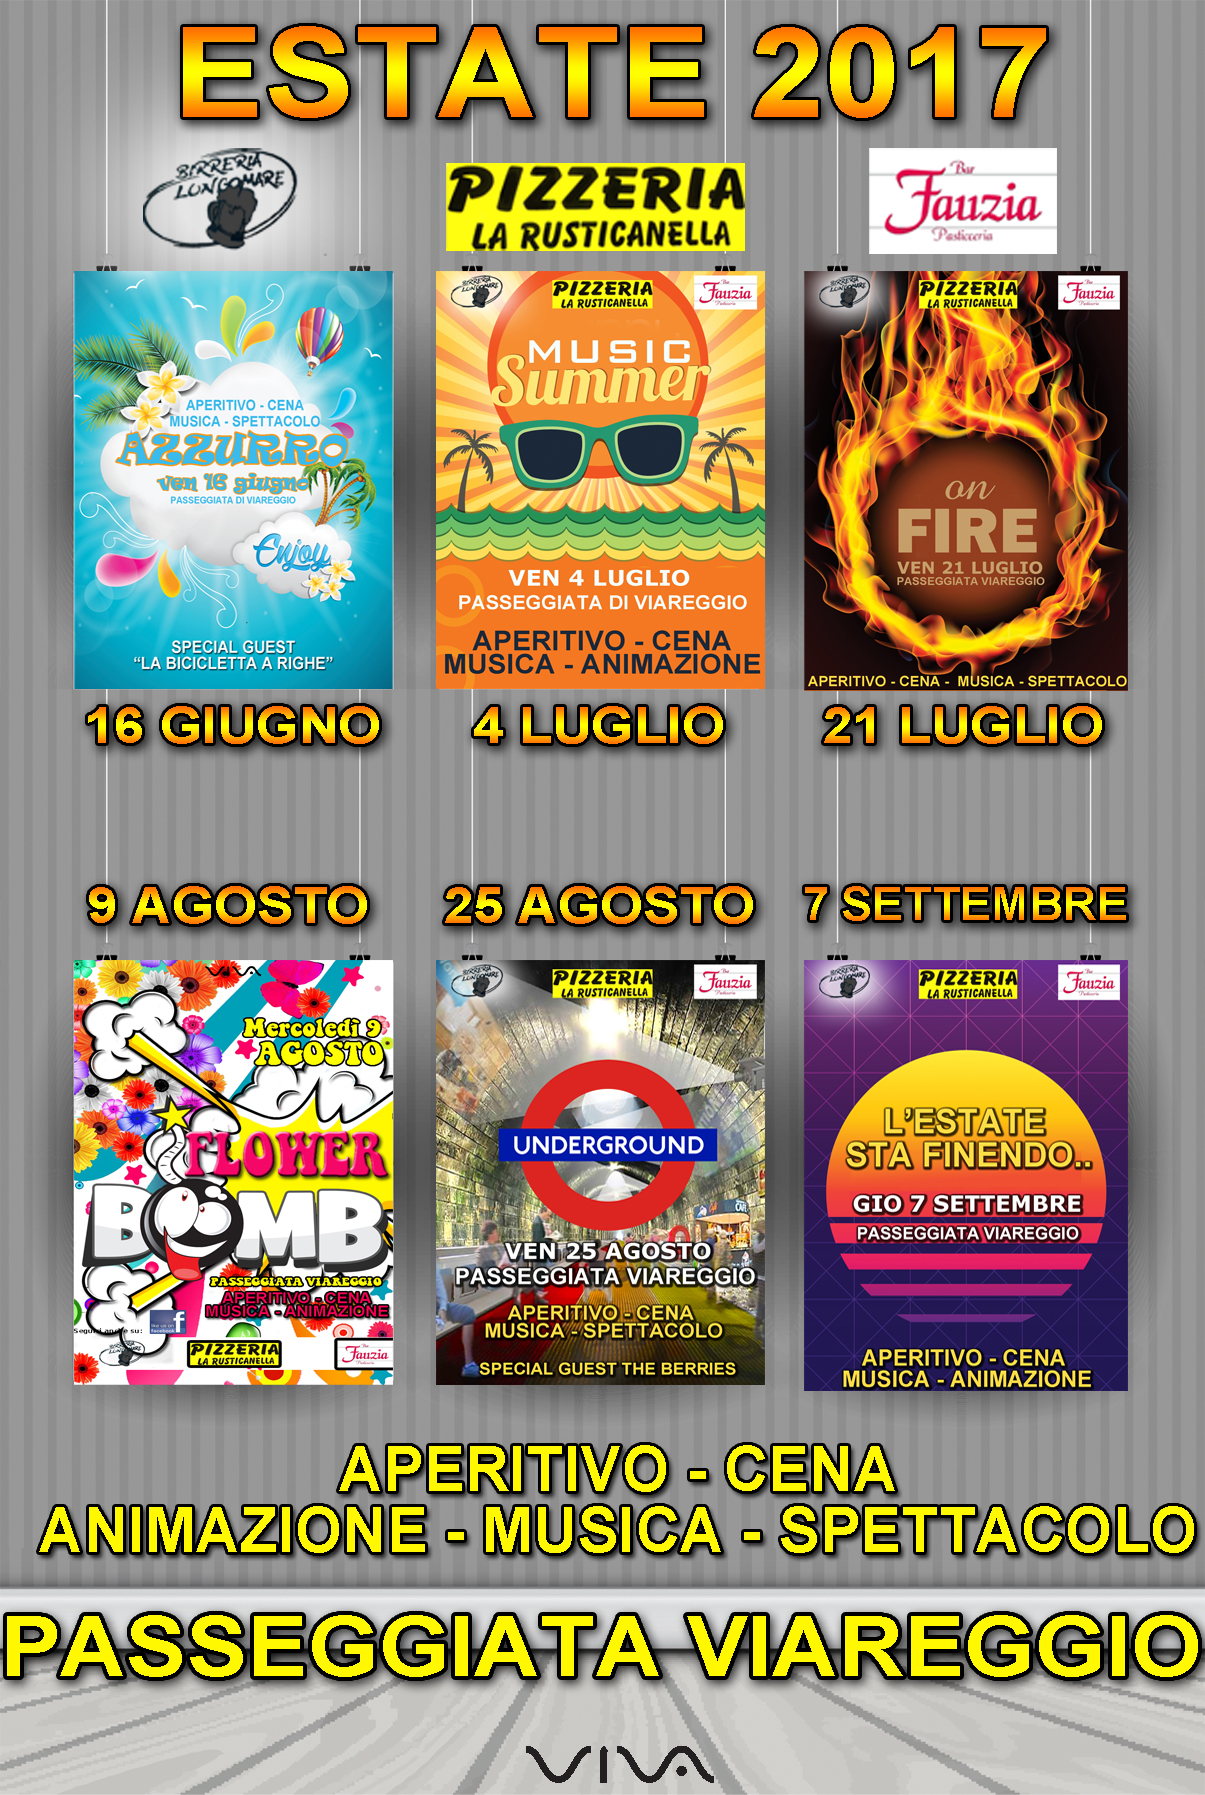 Fauzia, Rusticanella, Birreria Lungomare presentano il calendario degli eventi estivi